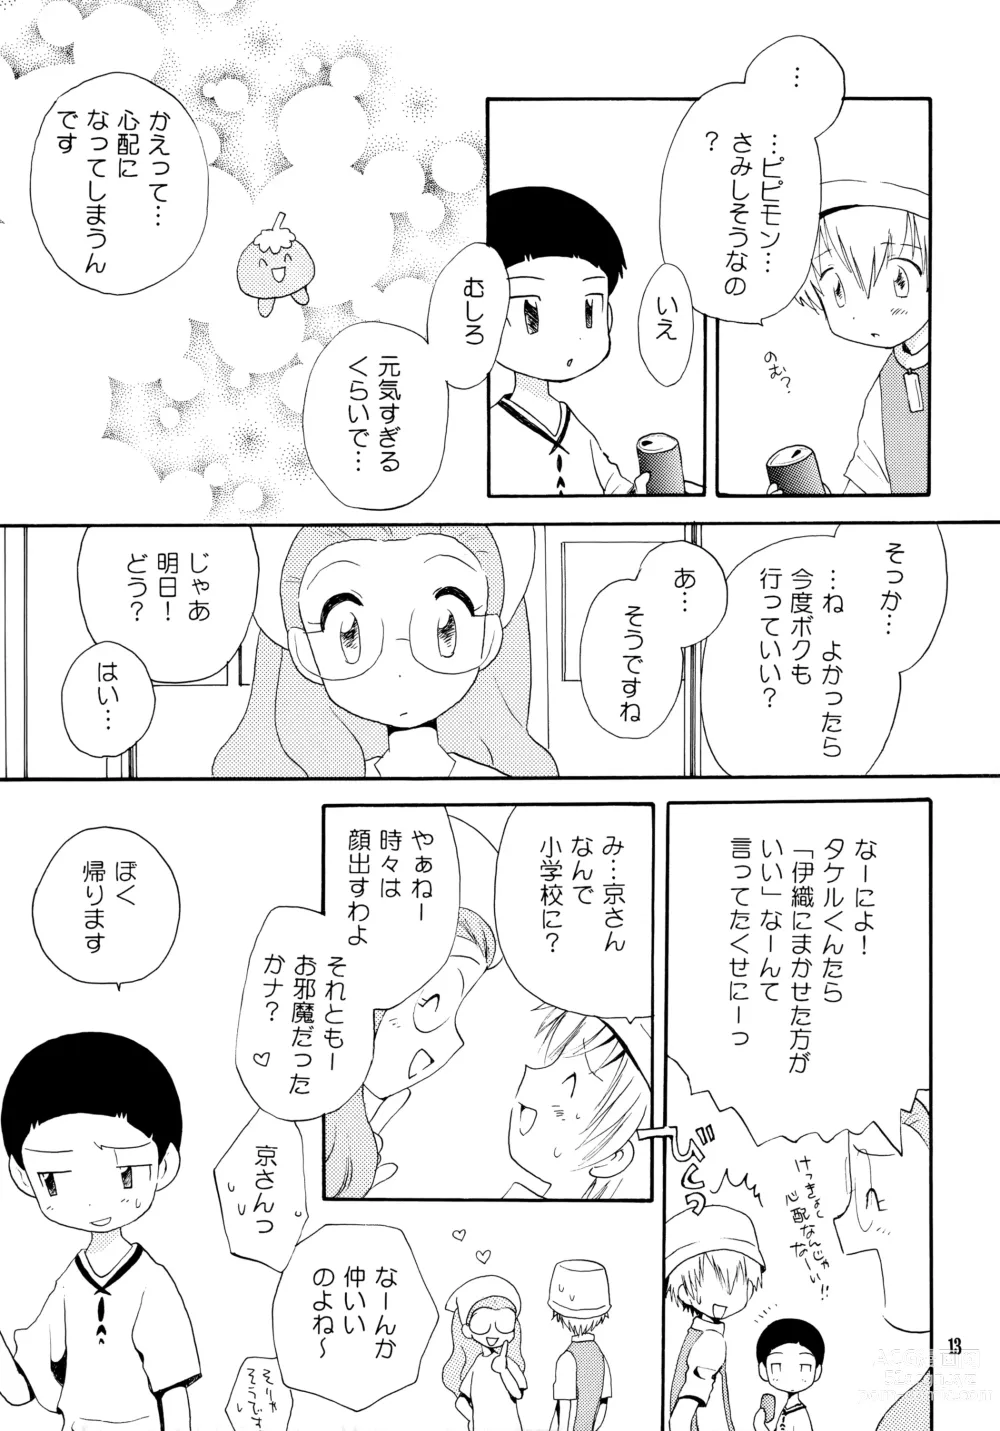 Page 12 of doujinshi Yorokobi mo Kanashimi mo Ikutoshitsuki